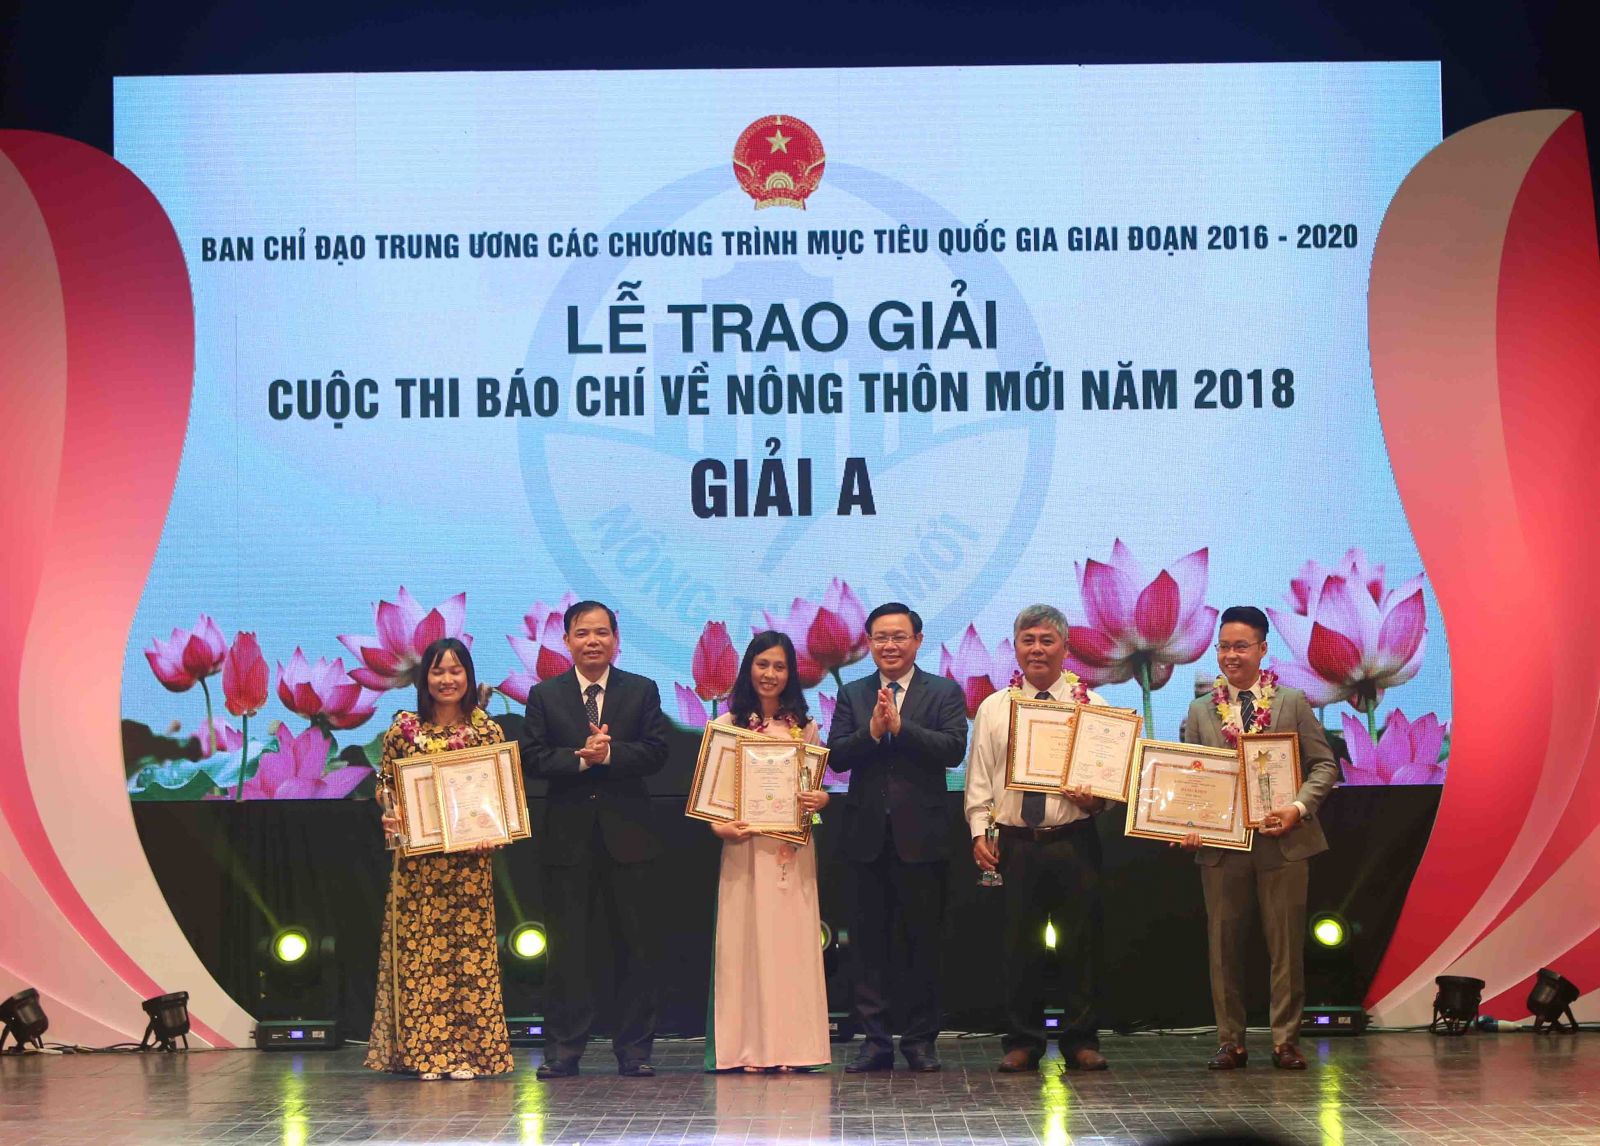 Phó Thủ tướng Vương Đình Huệ và Bộ trưởng Bộ NN&PTNT Nguyễn Xuân Cường trao giải A cuộc thi báo chí về Nông thôn mới năm 2018.